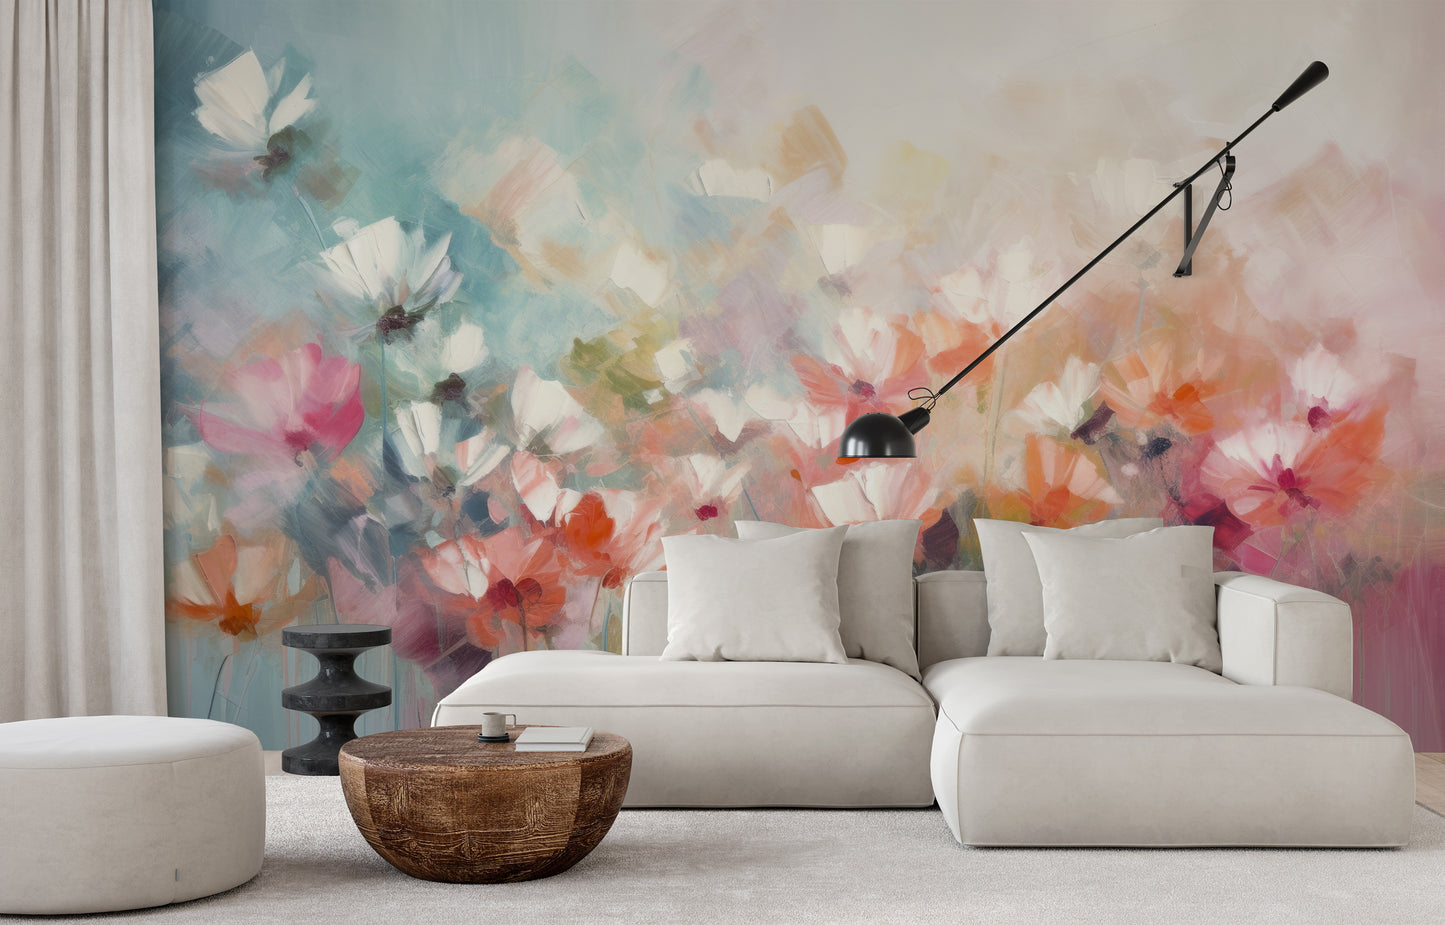 Wzór fototapety malowanej o nazwie Delicate Floral Hues pokazanej w aranżacji wnętrza.